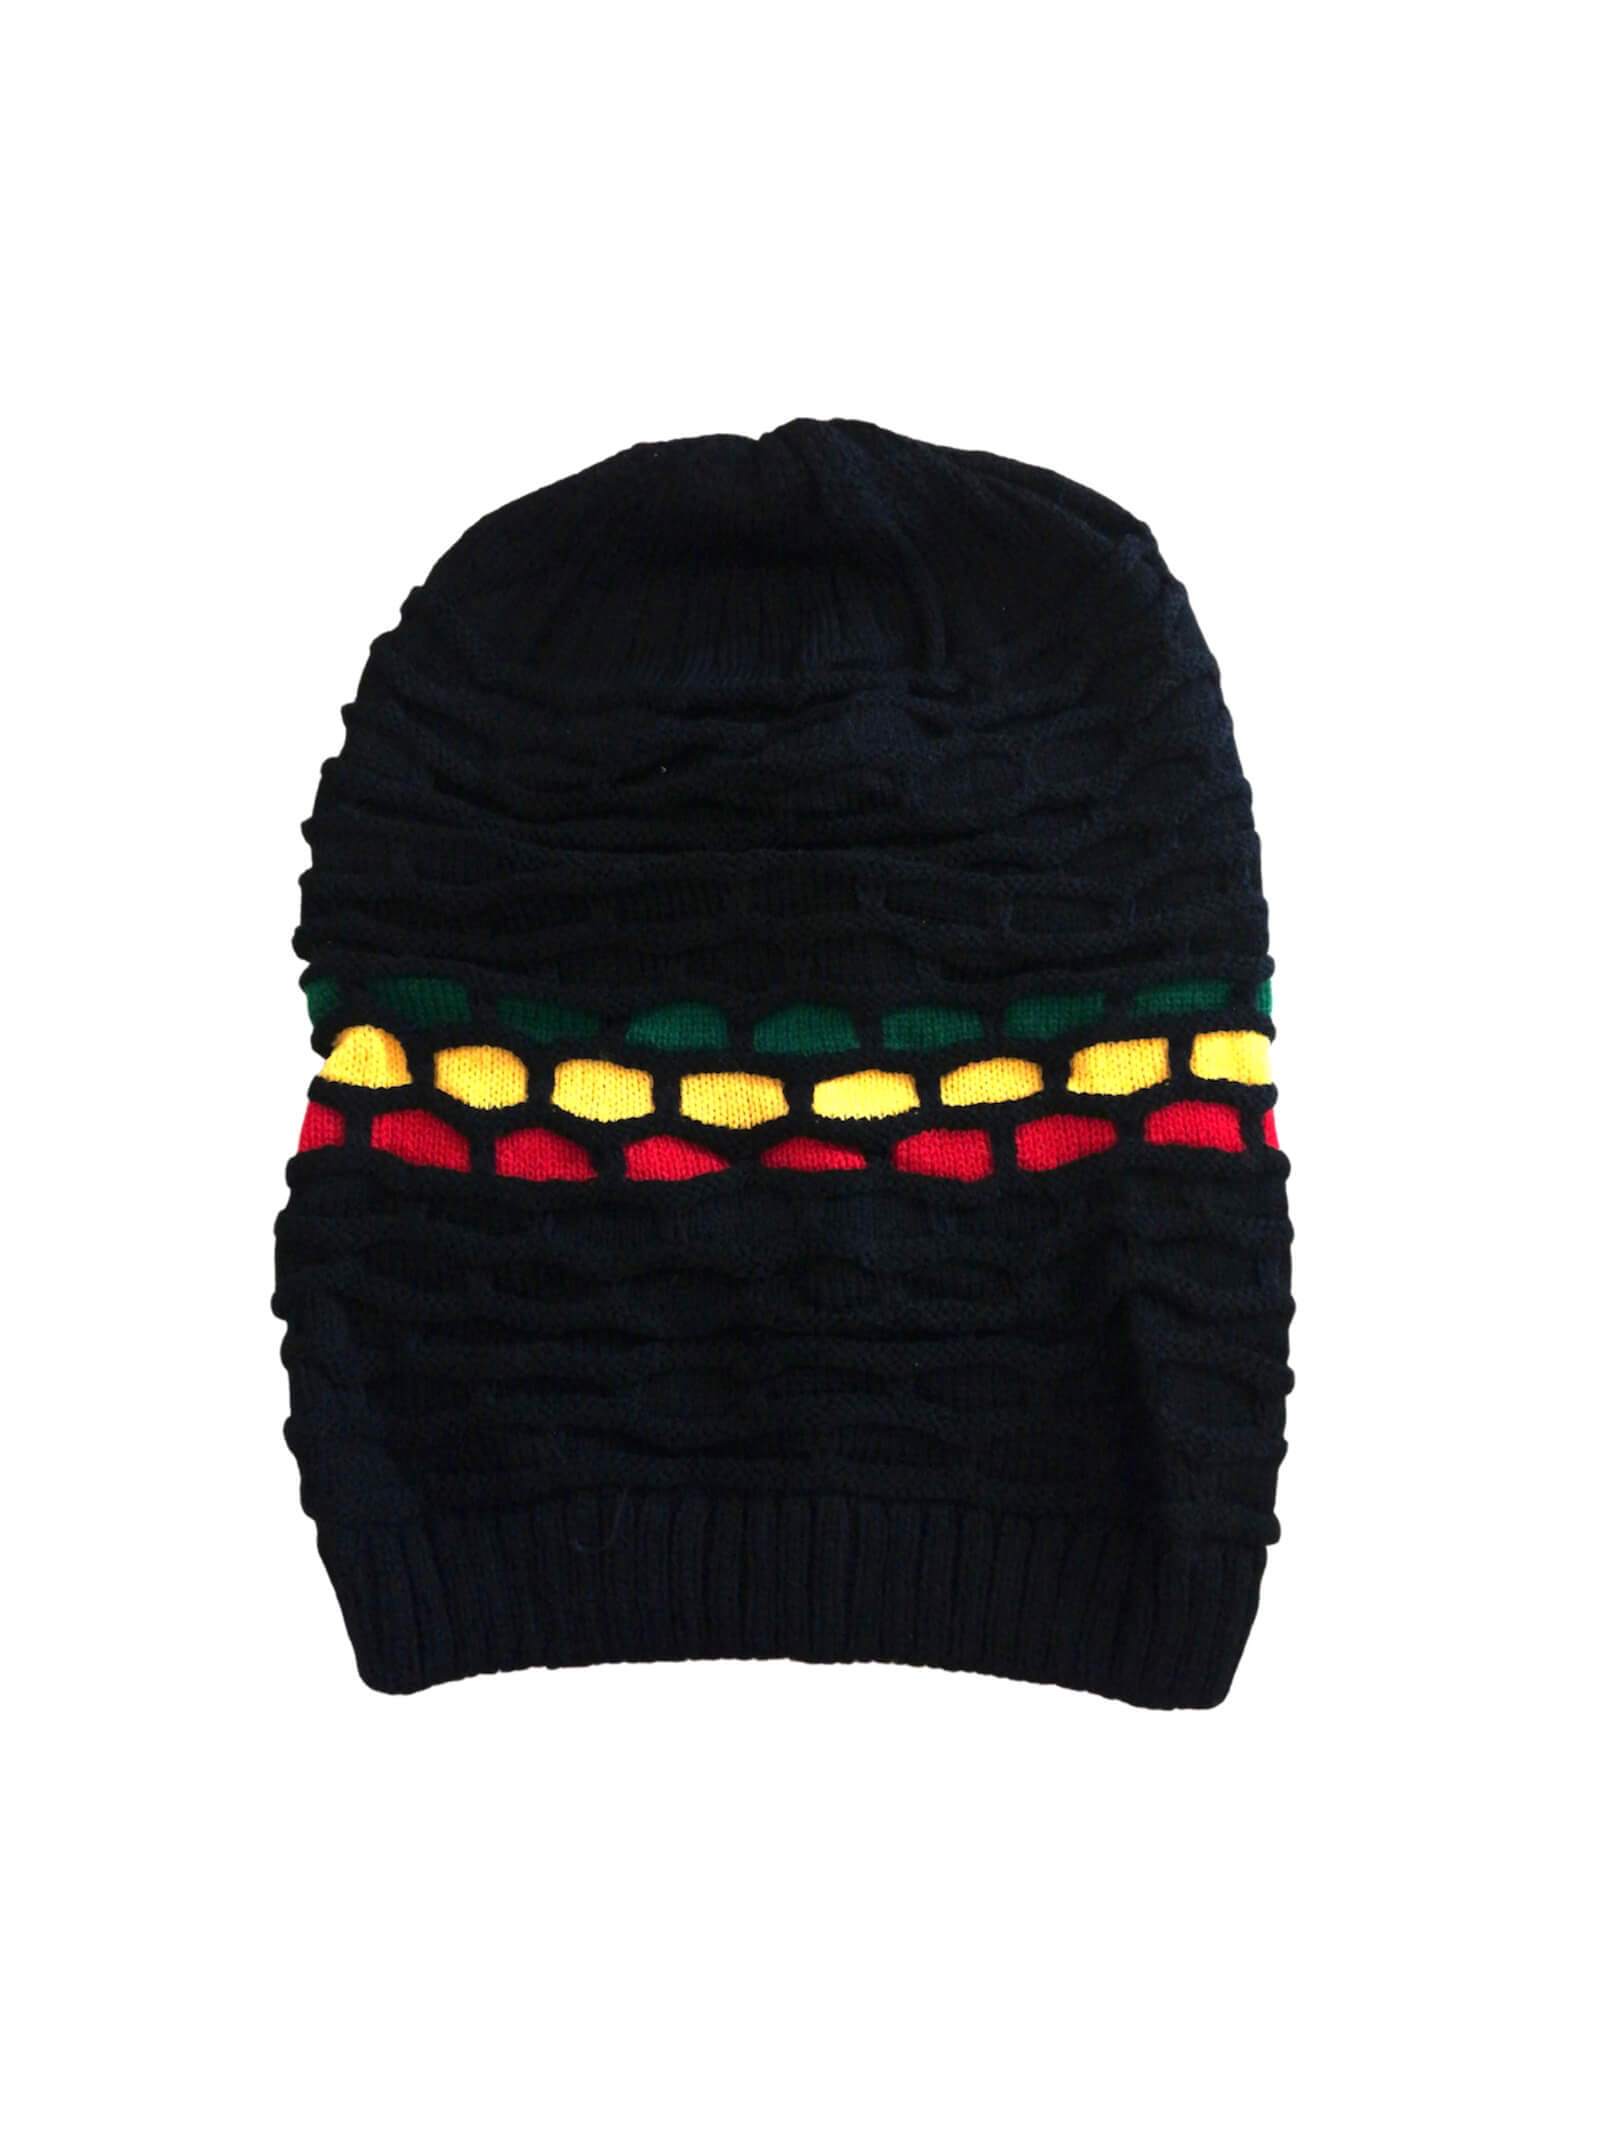 Bonnet reggae long Marley       (x12) 2,50€/unité | Grossiste-pro